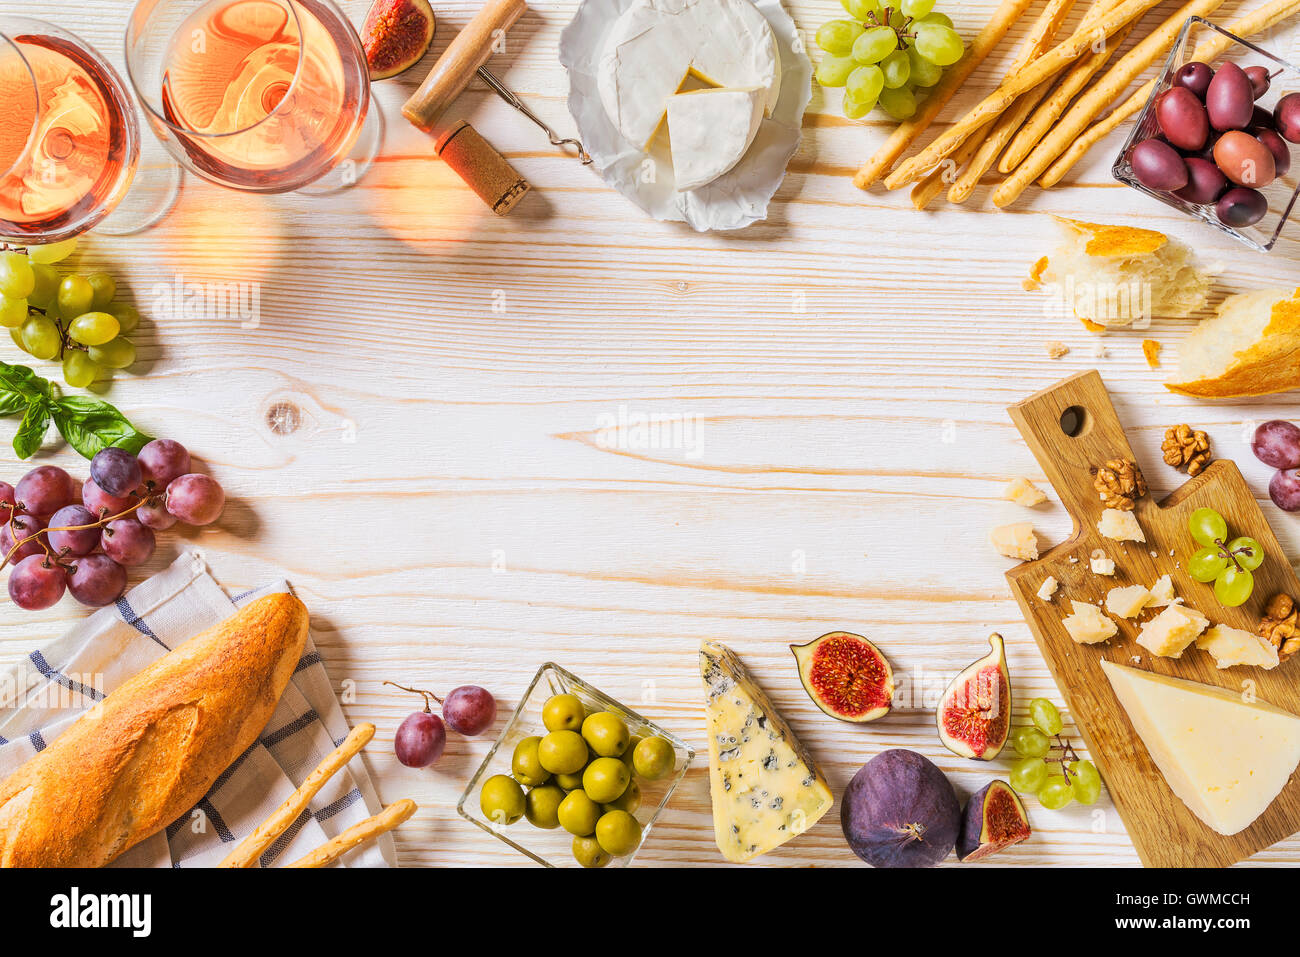 Verschiedene Arten von Käse, Wein, Baguette und Früchte auf weiß ...